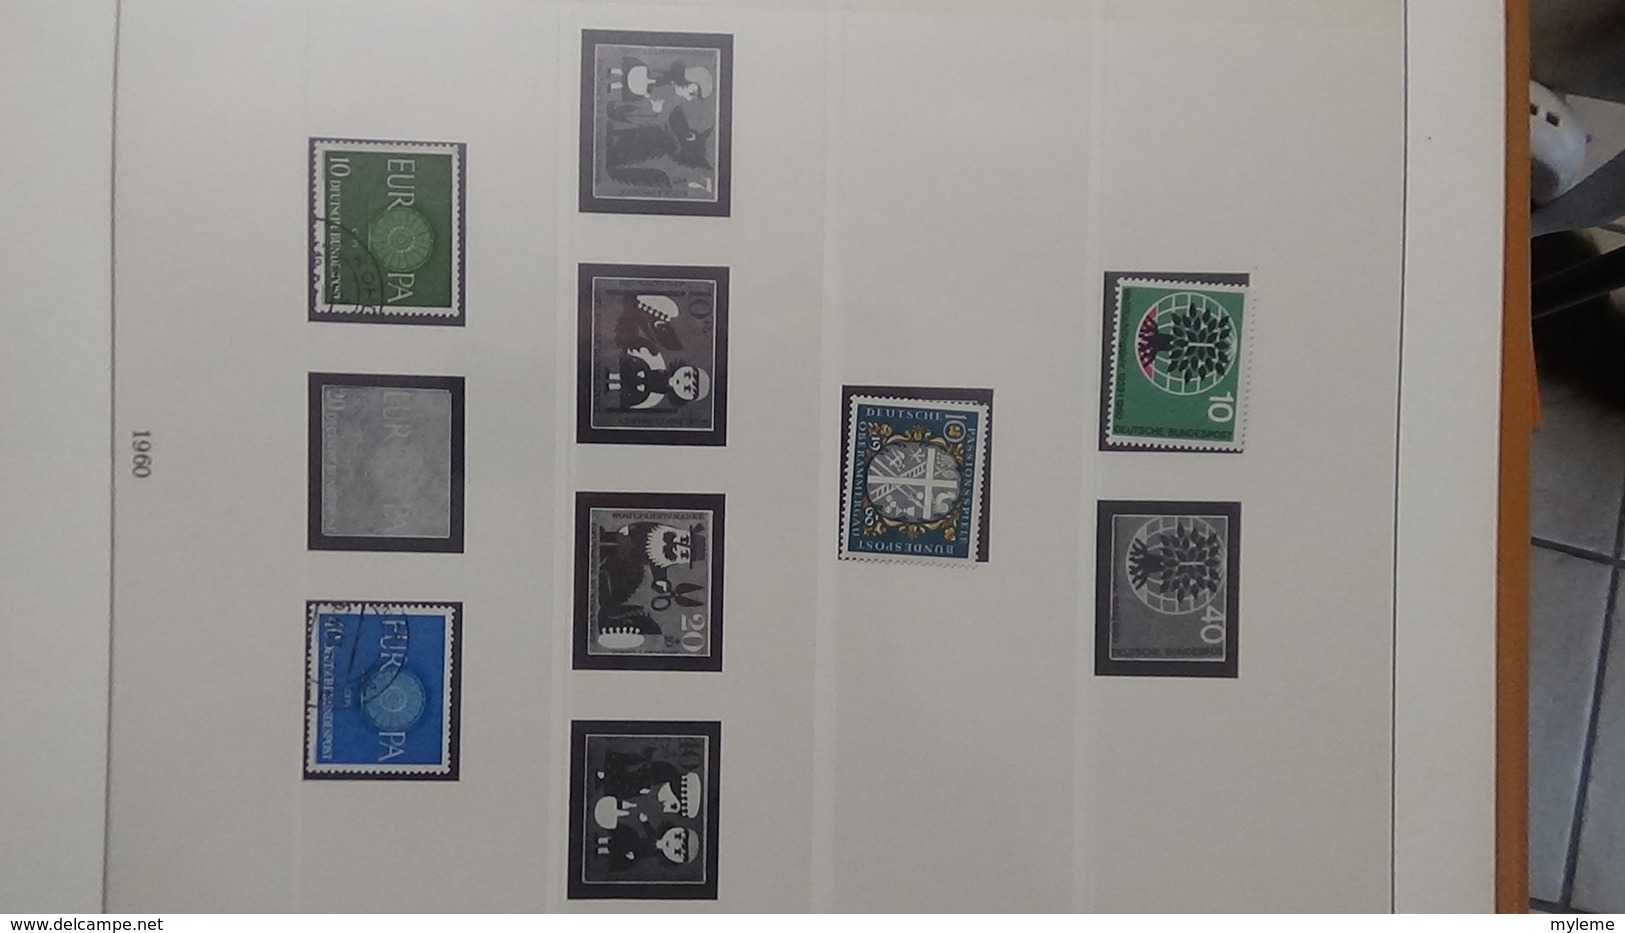 B400 Album LINDNER d'Allemagne de 1949 à 1960 en timbres ** et oblitérés + documents philatéliques